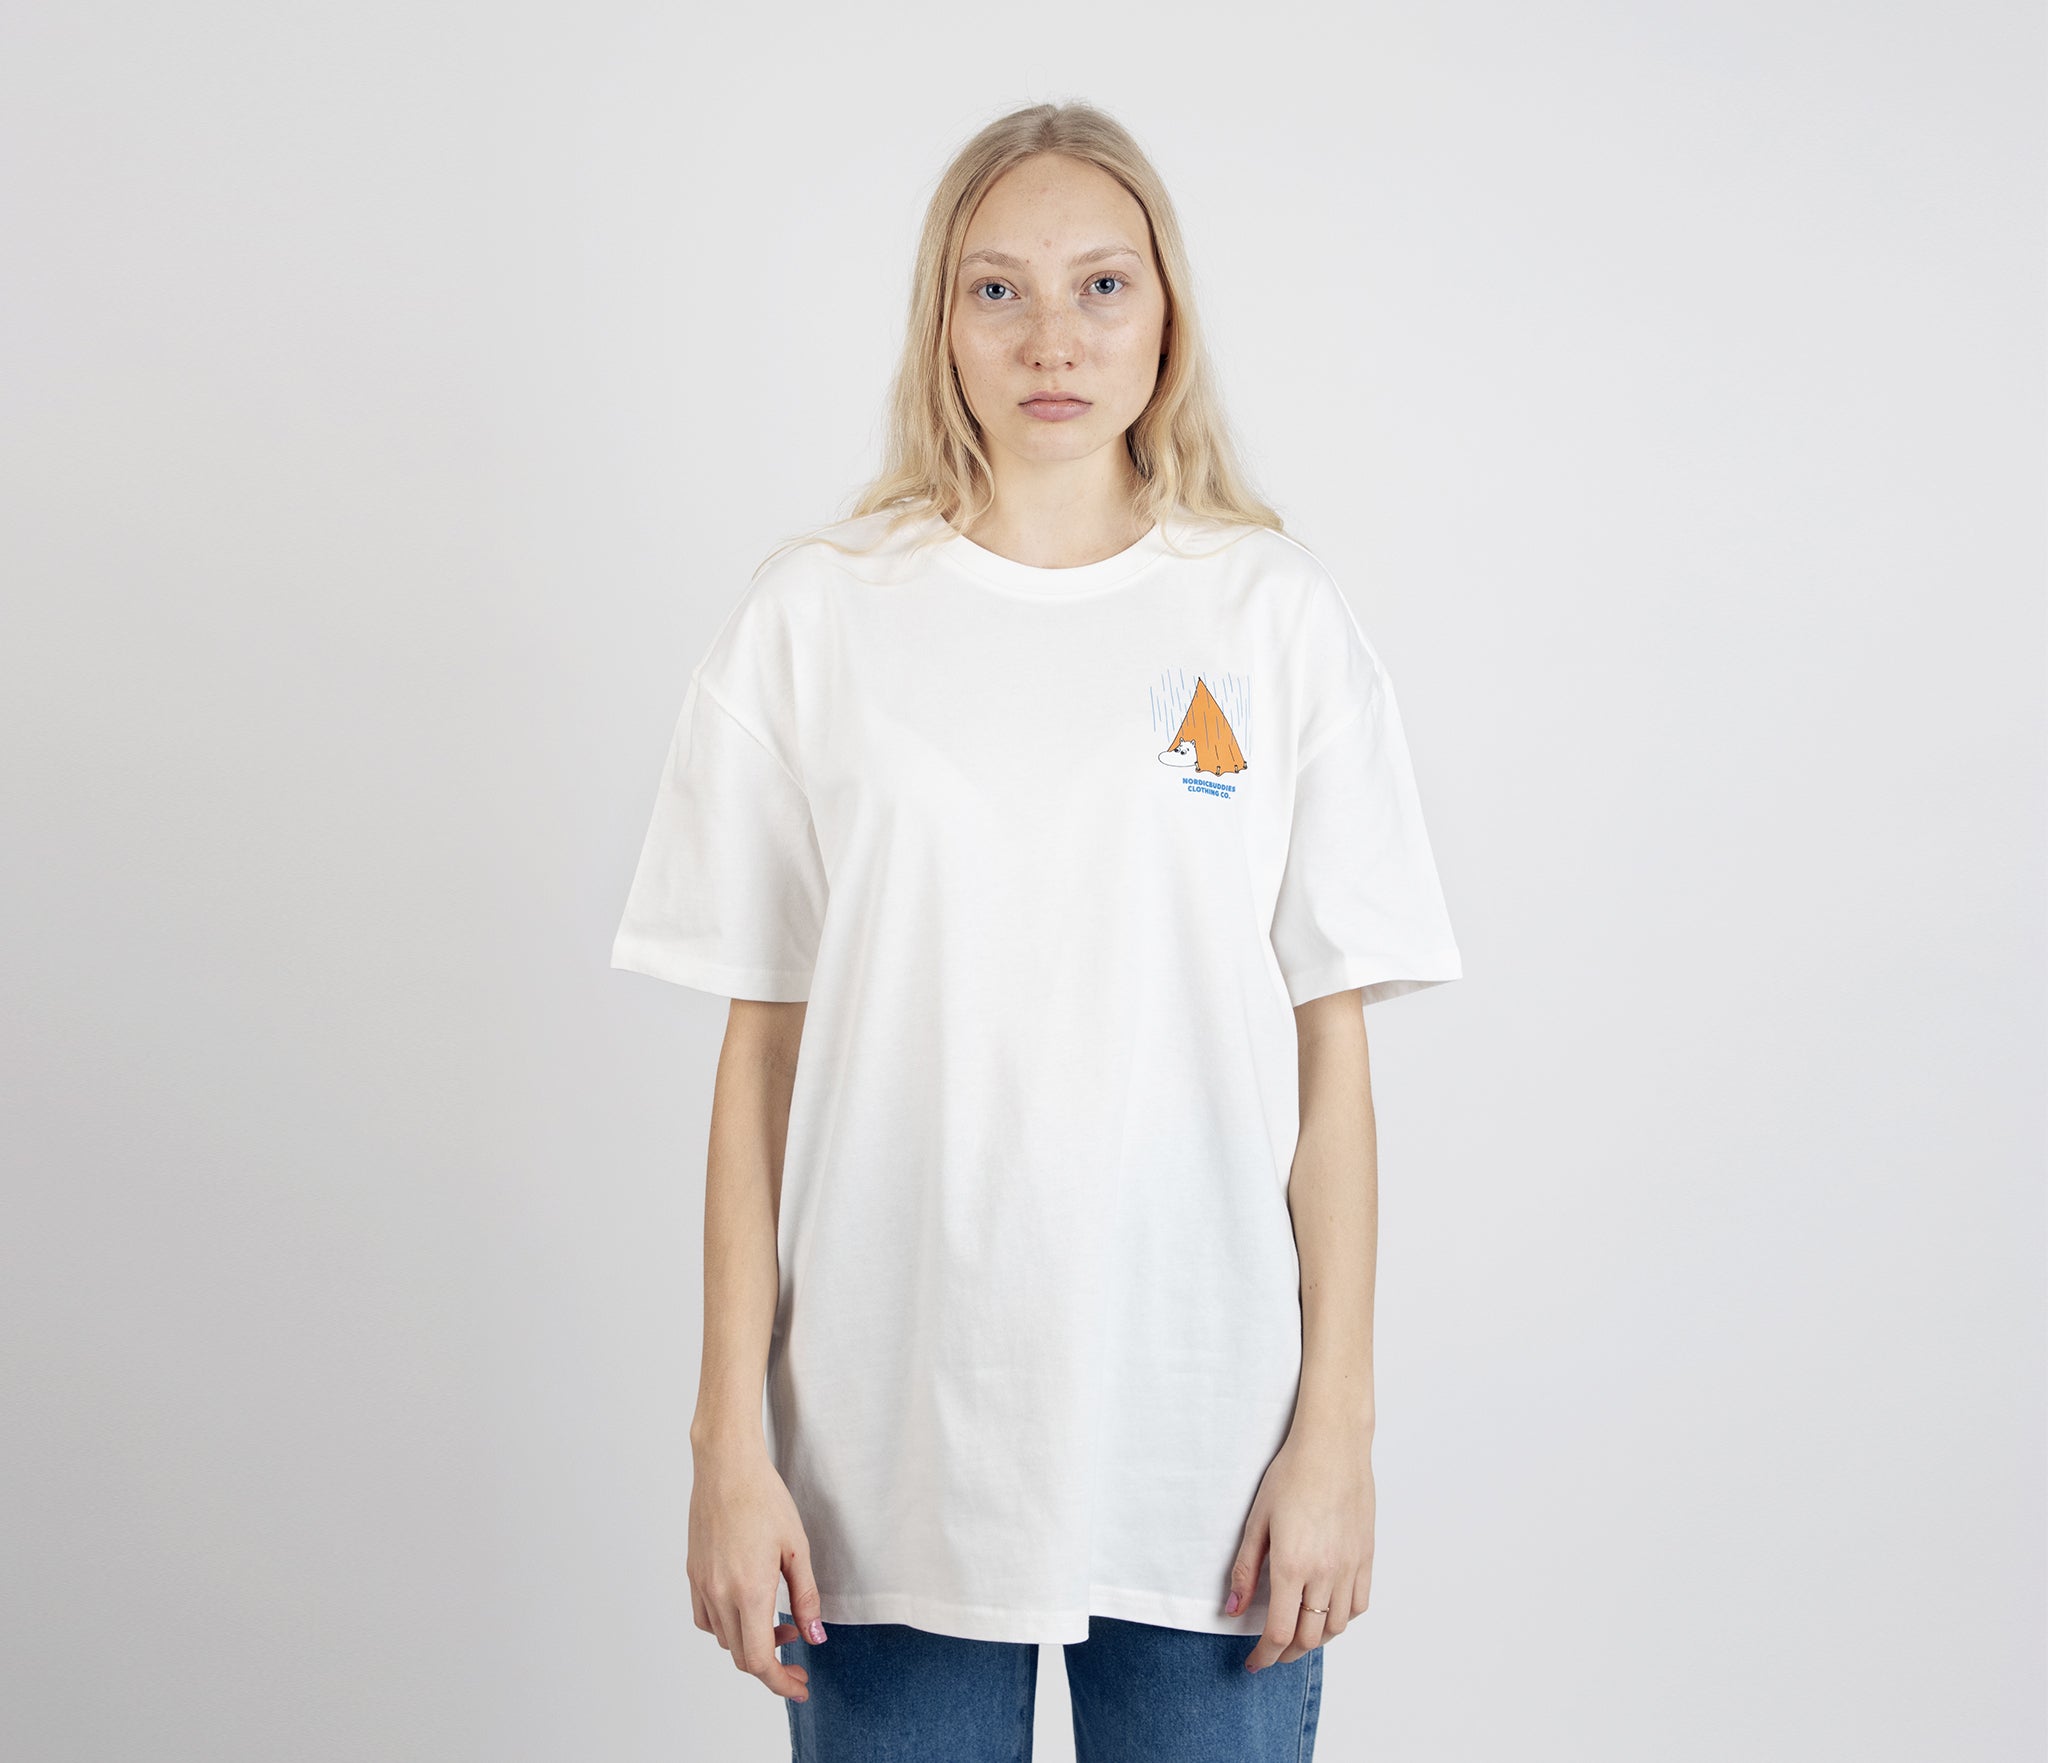 Moomin Adventure T-Shirt Unisex - White